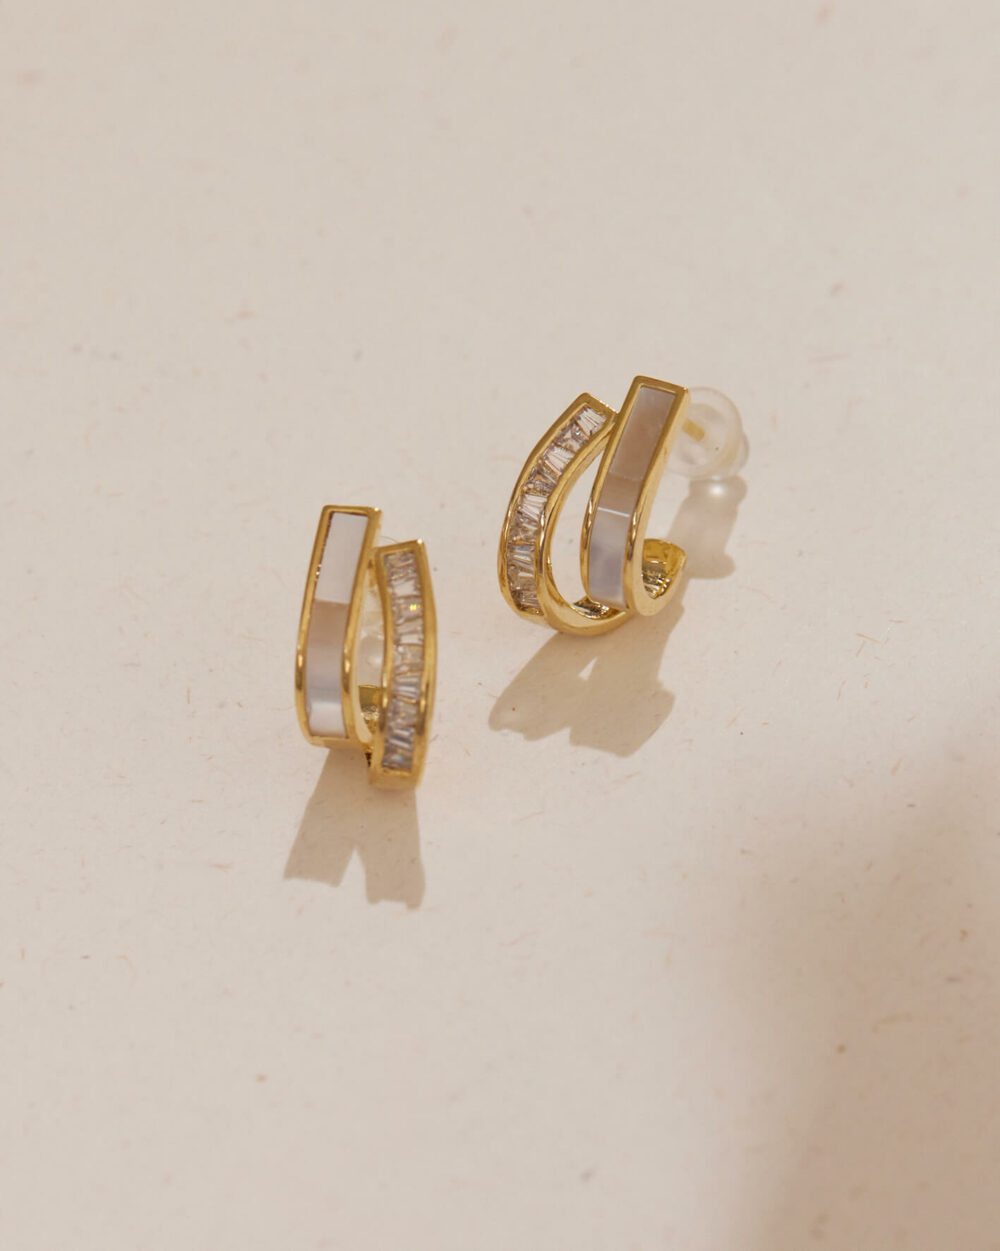 Eco安珂,韓國飾品,韓國耳環,純銀耳針,矽膠夾耳環,透明耳夾耳環,無痛耳夾耳環,珠貝耳環